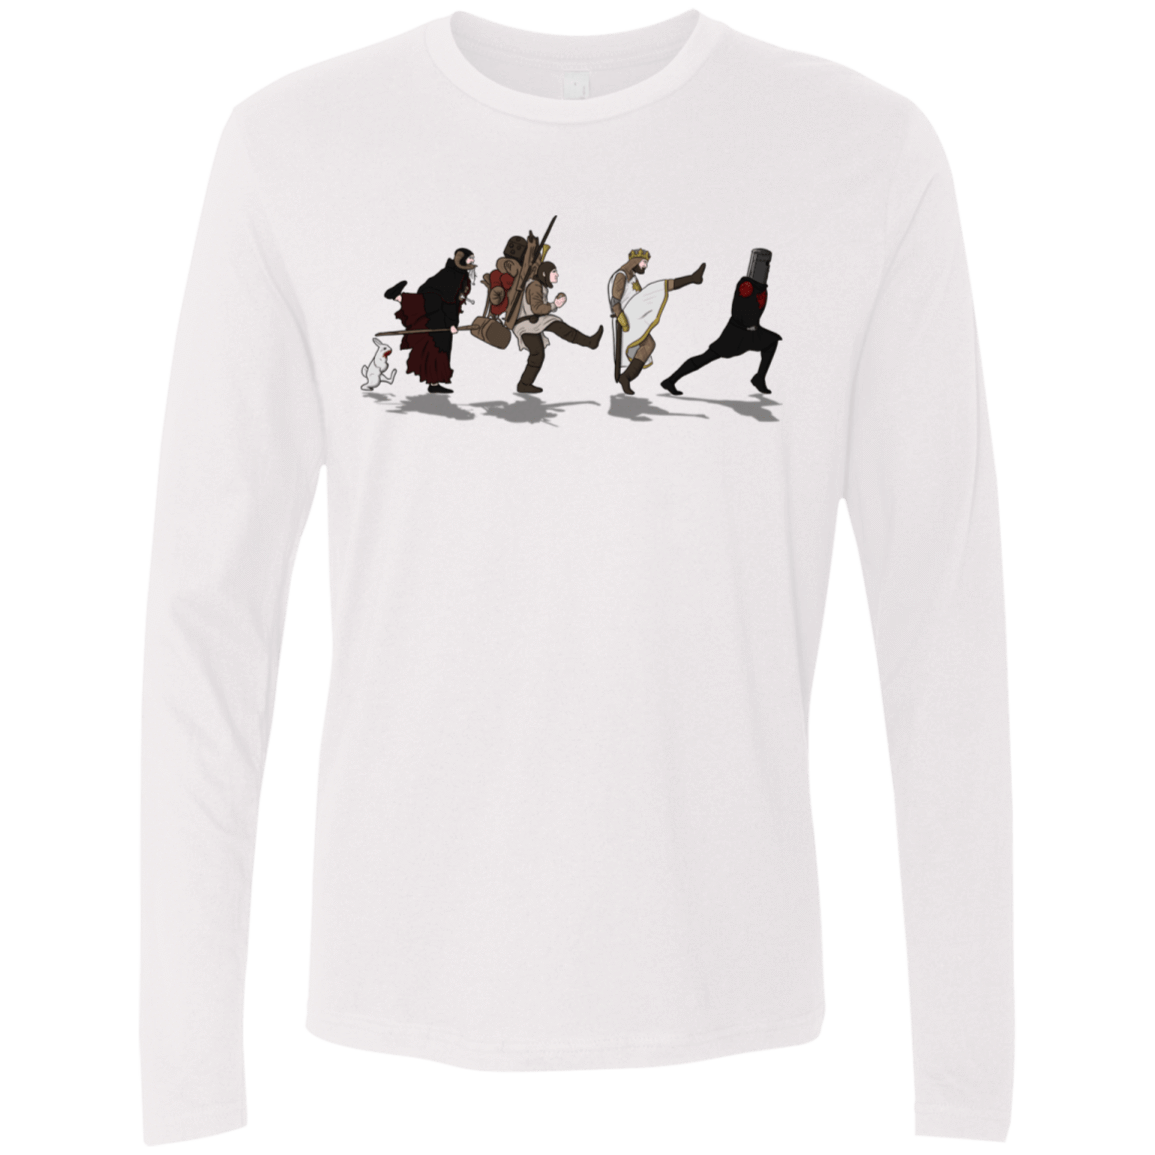 T-Shirts White / S Caminando Hacía El Grial Men's Premium Long Sleeve